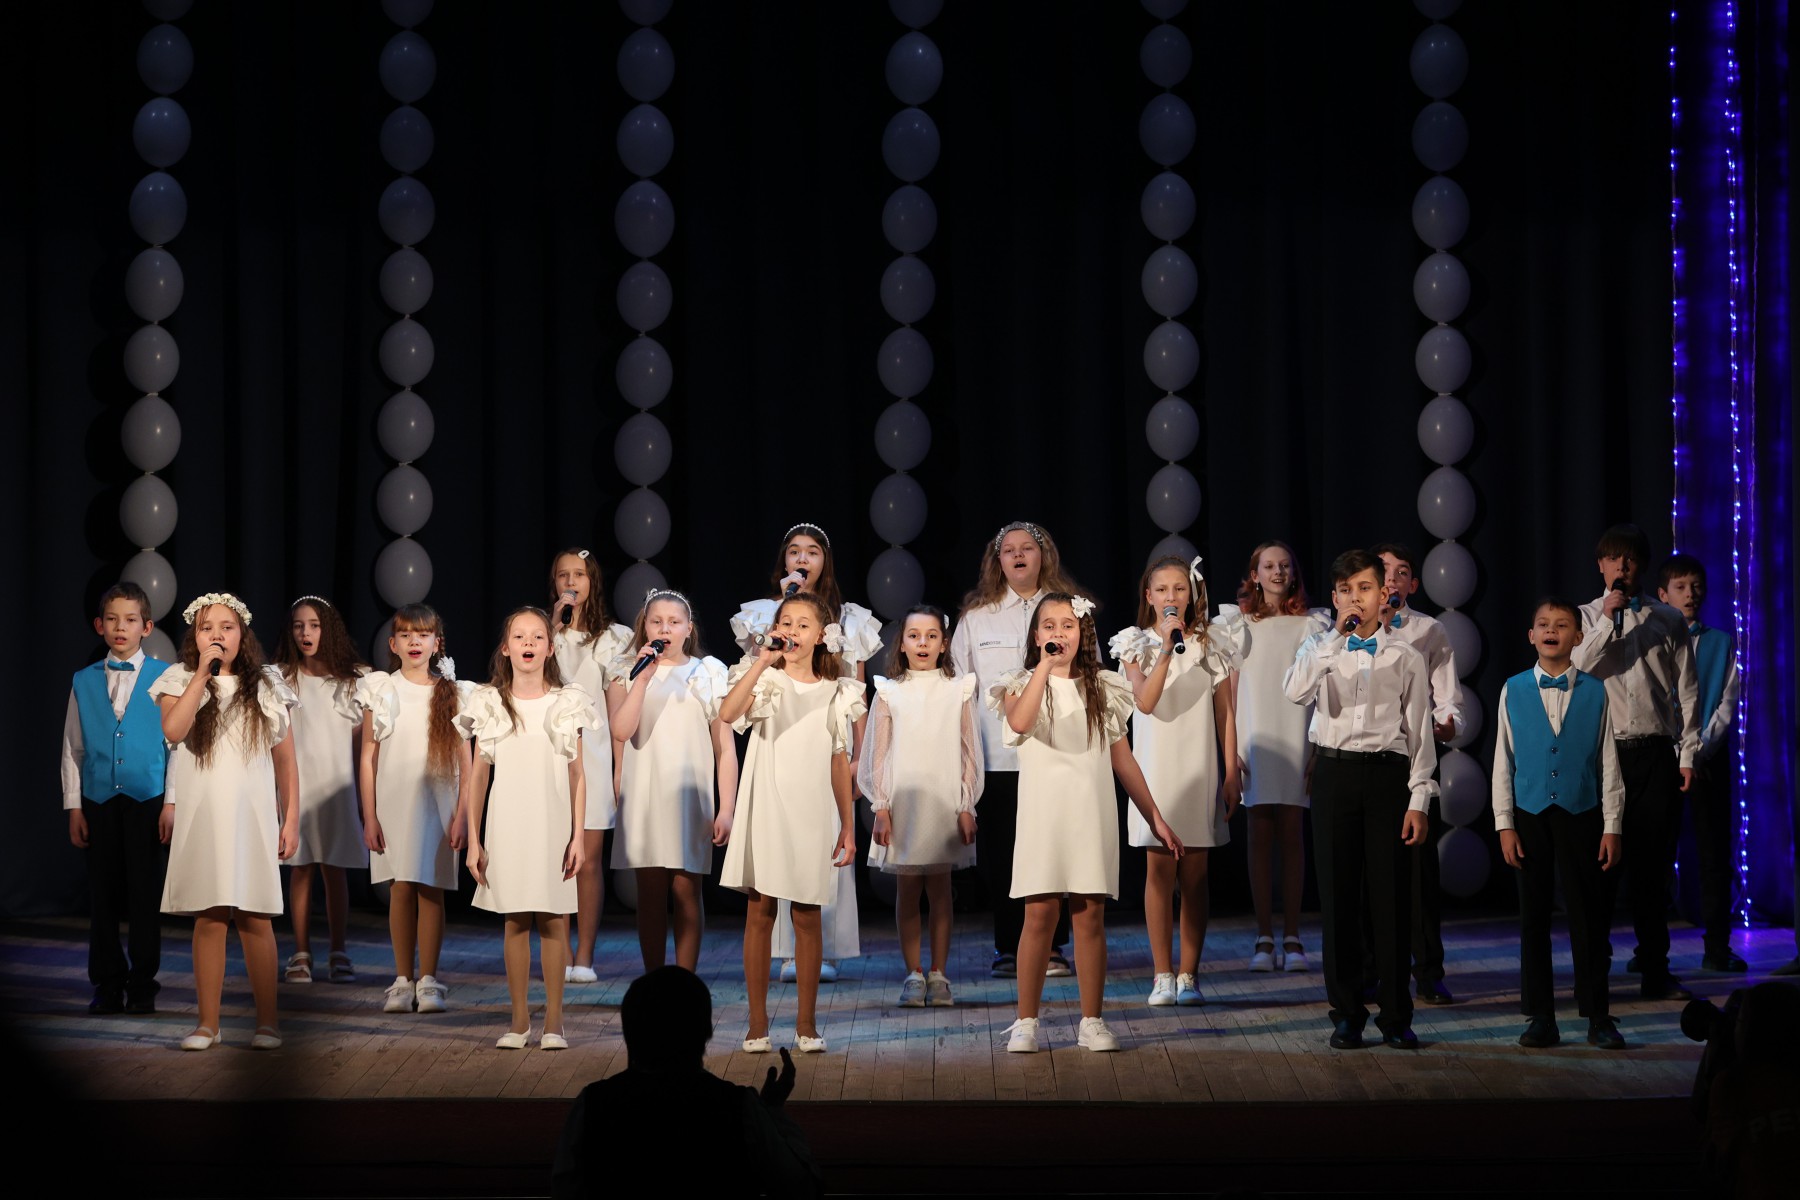 Второй год подряд школьный хор «Созвездие» получает первое место в номинации «Сводный хор». Фото Владимира Коцюбы-Белых